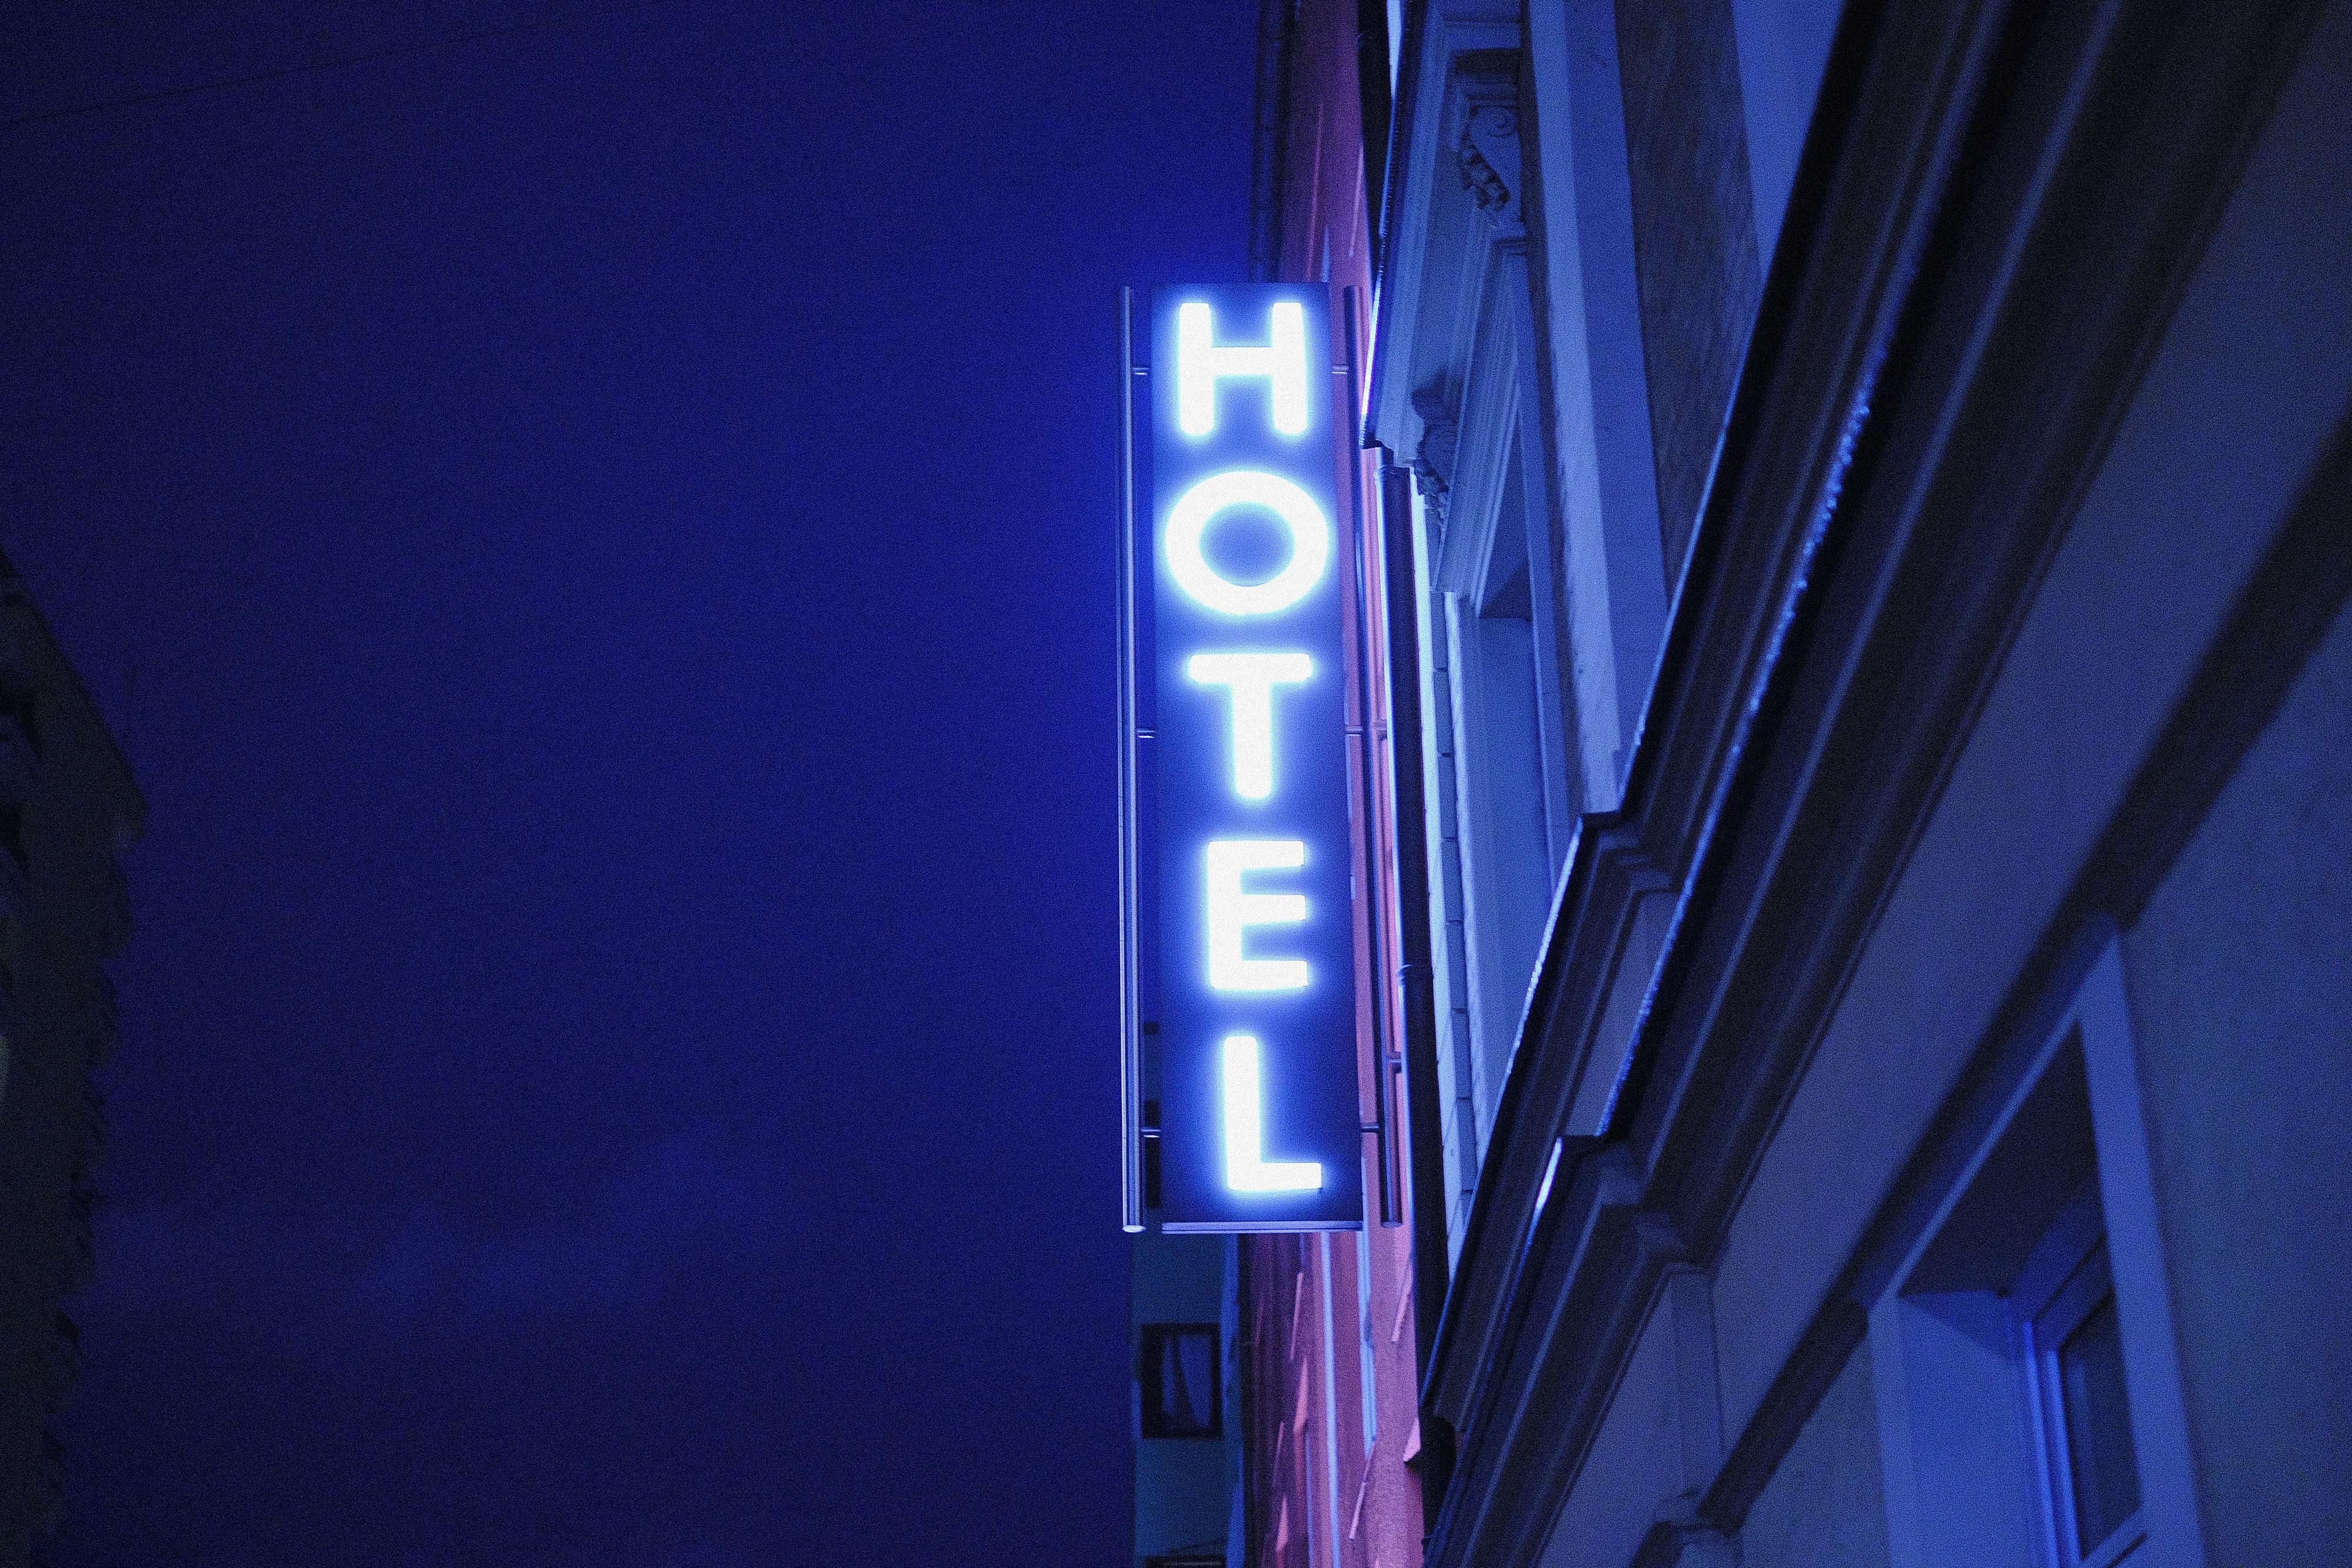 Sötétben világító neon hotel felirat